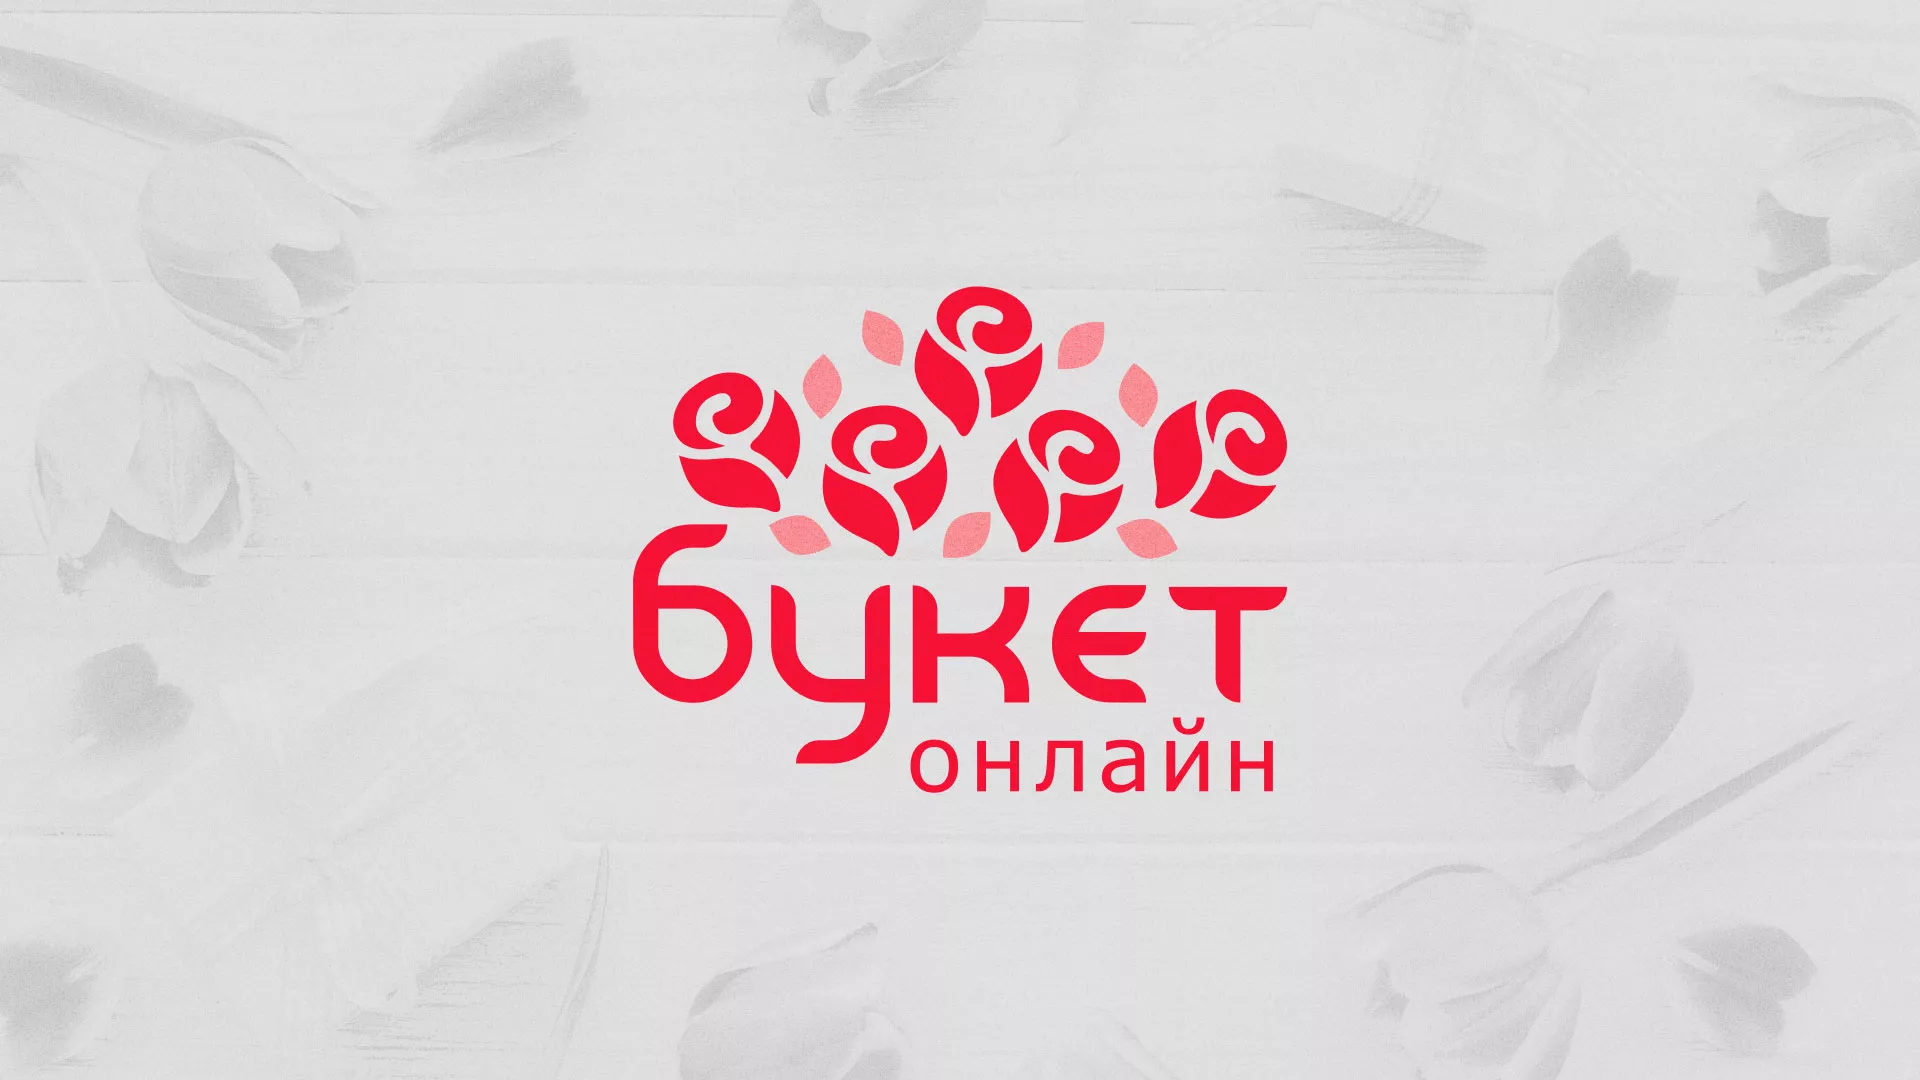 Создание интернет-магазина «Букет-онлайн» по цветам в Сорочинске